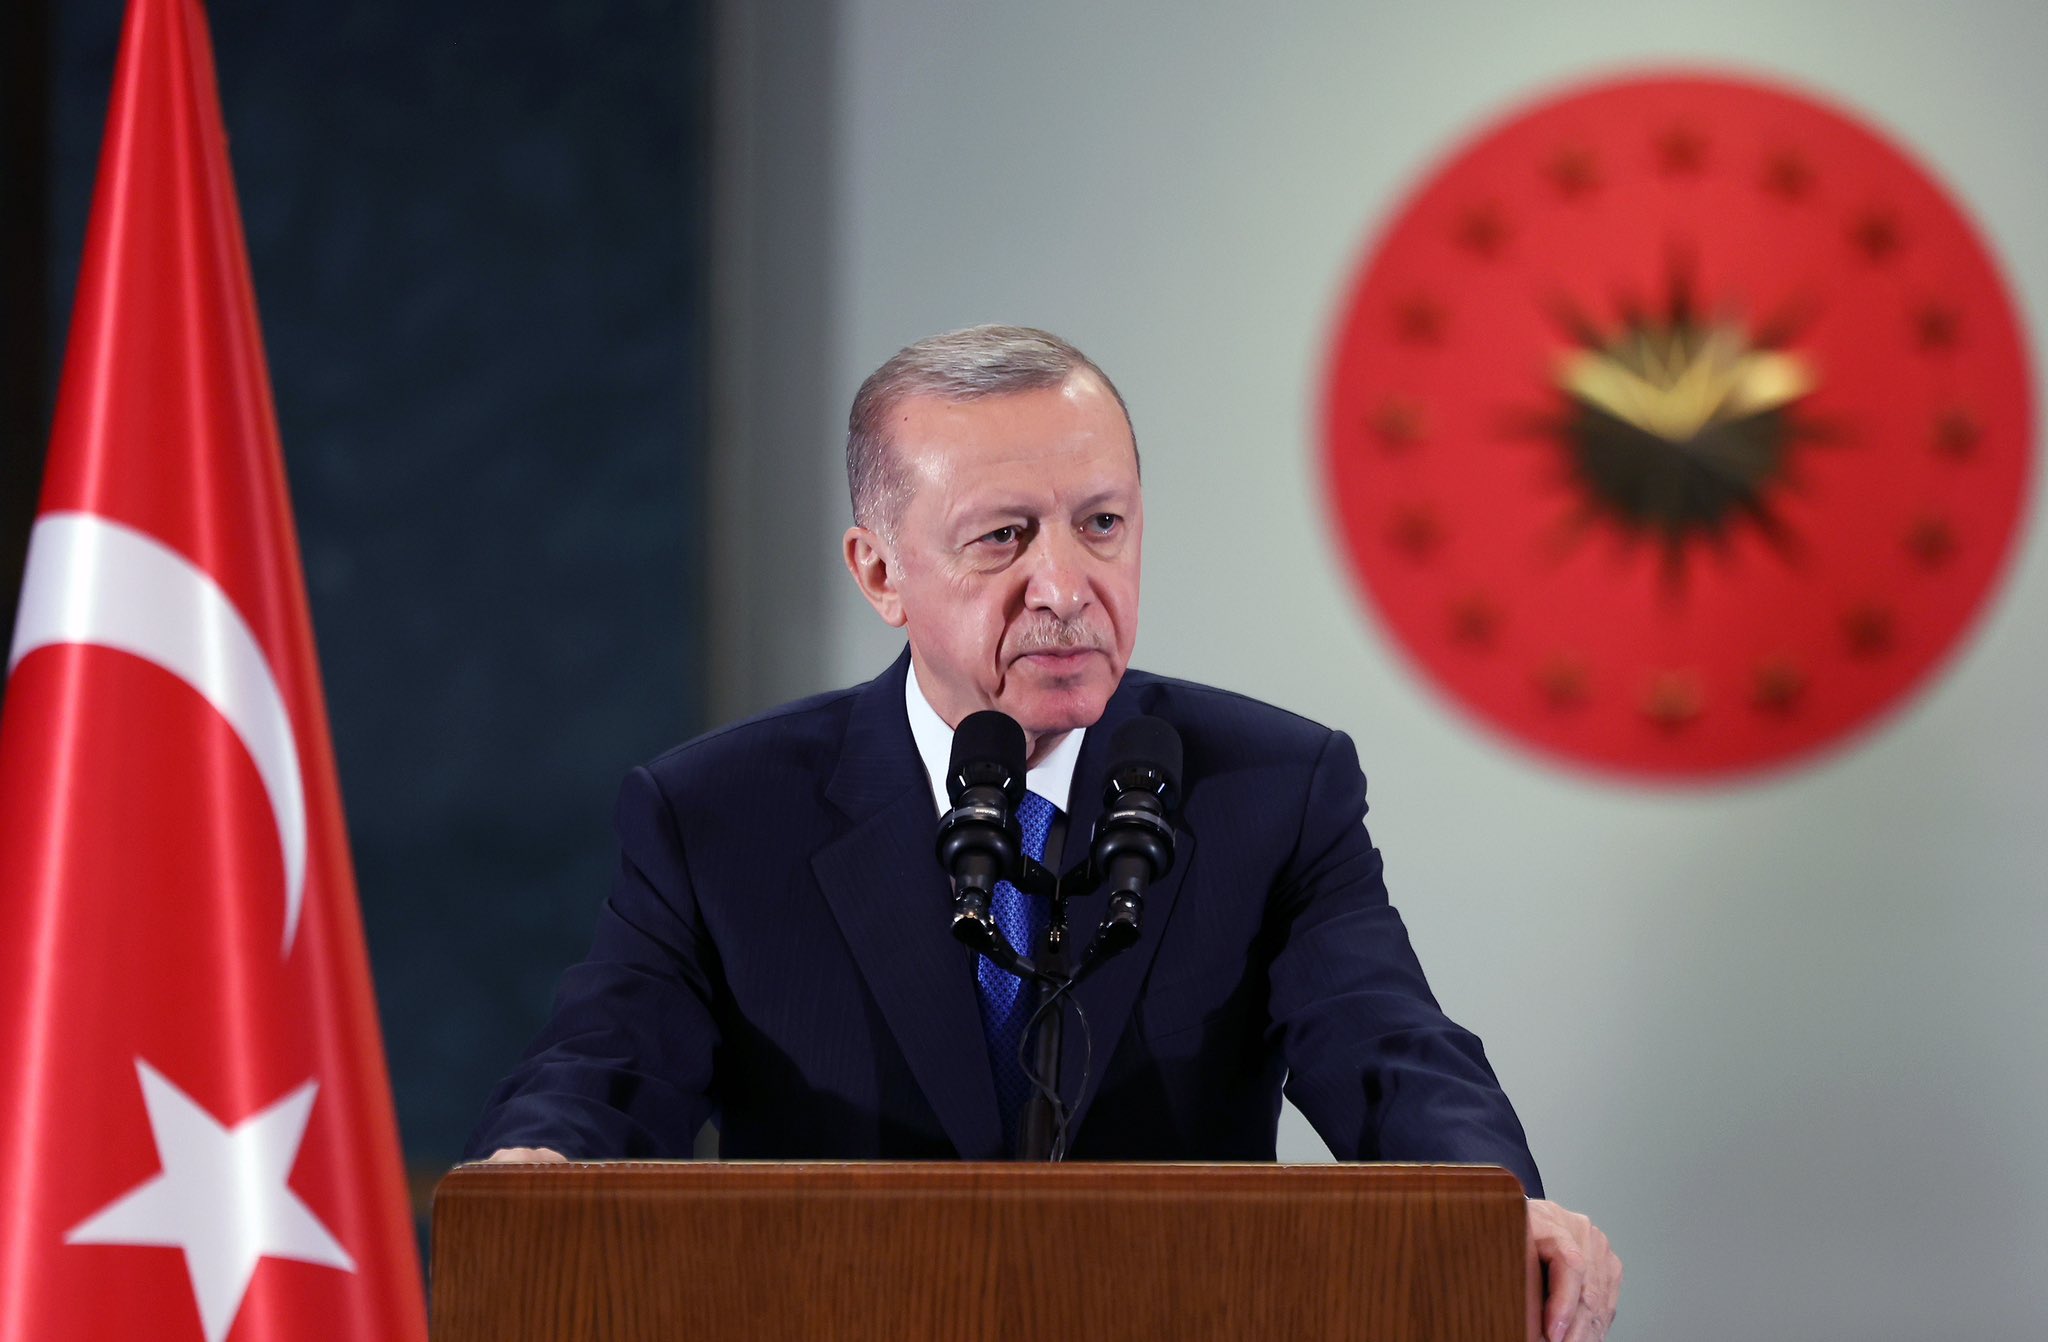 Cumhurbaşkanı Erdoğan’dan gündeme dair açıklamalar